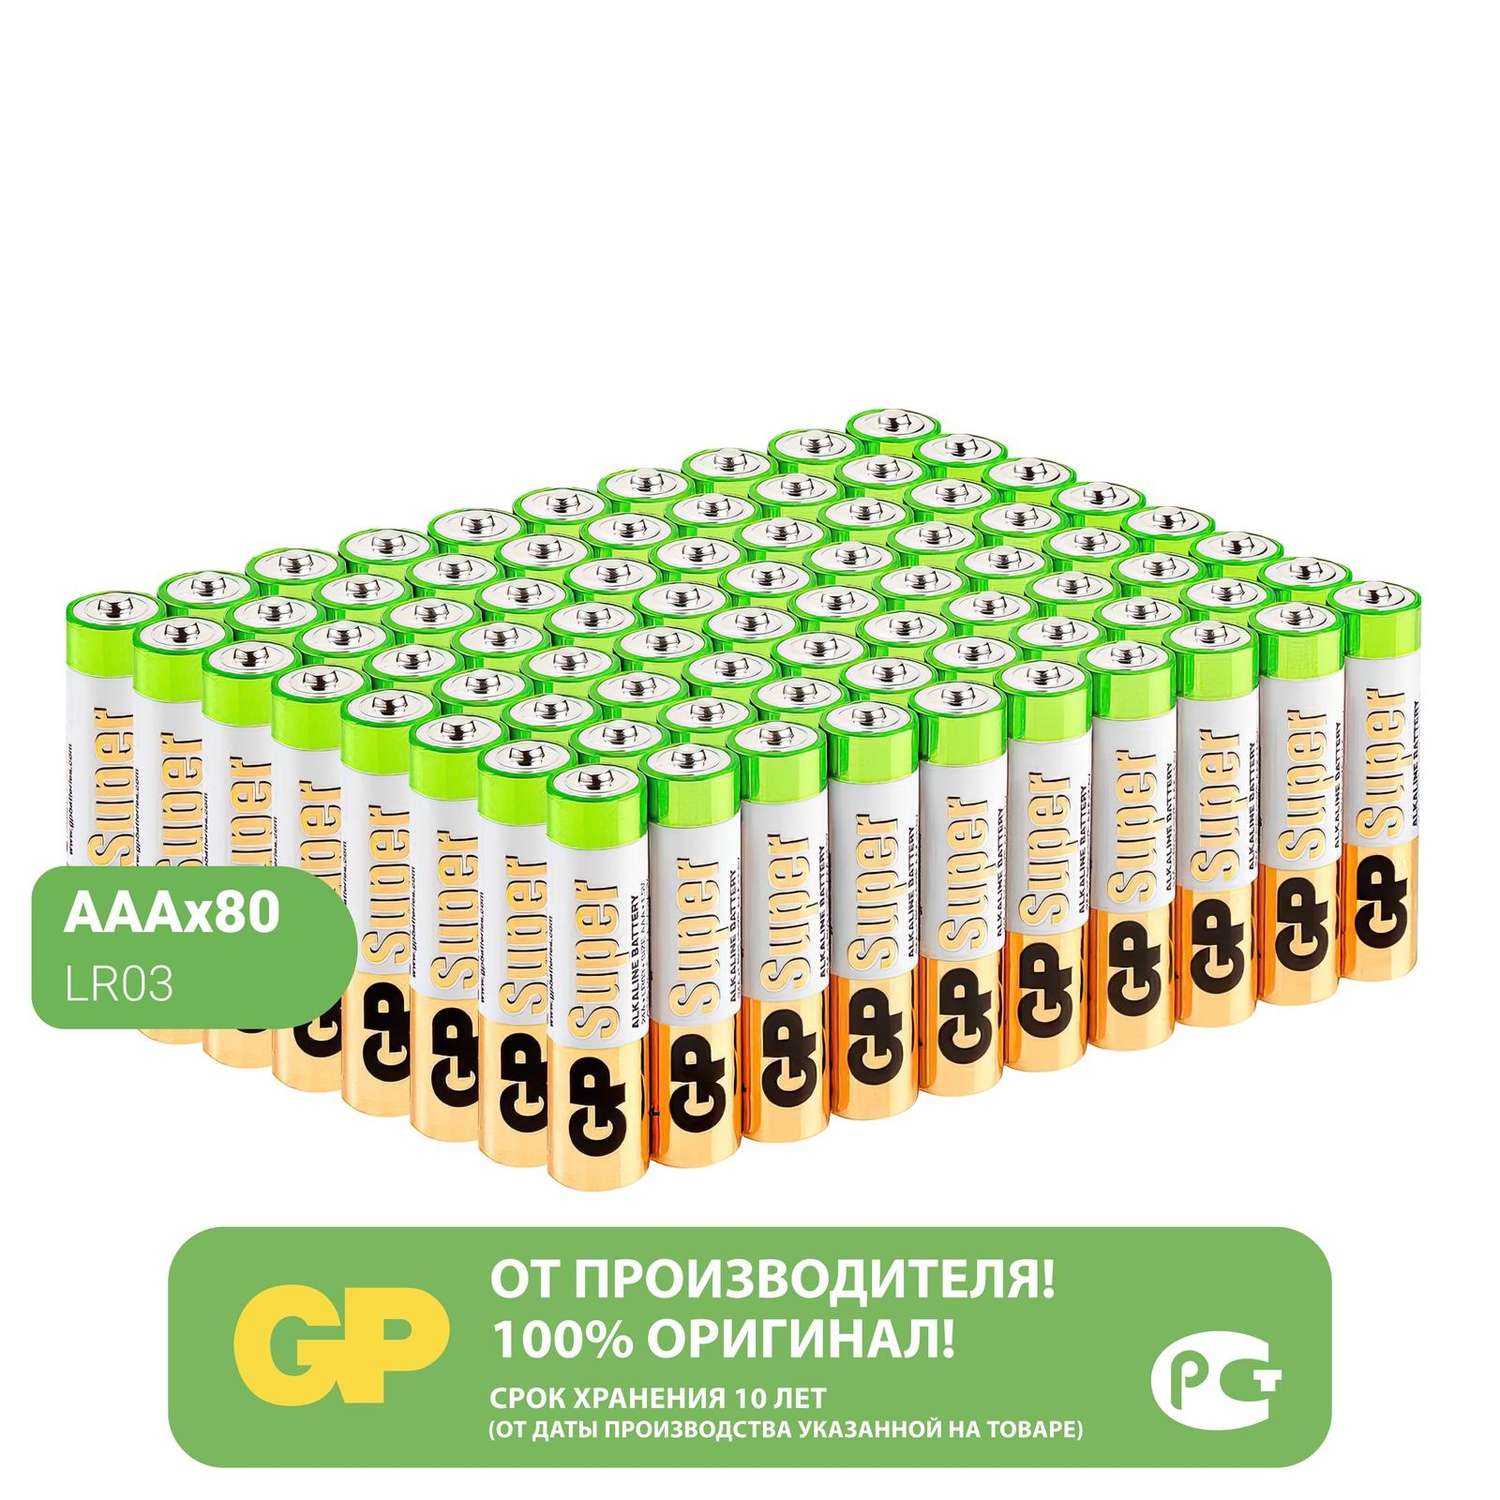 Батарейки АAA GP (мизинцы) 80 штук в упаковке - фото 1